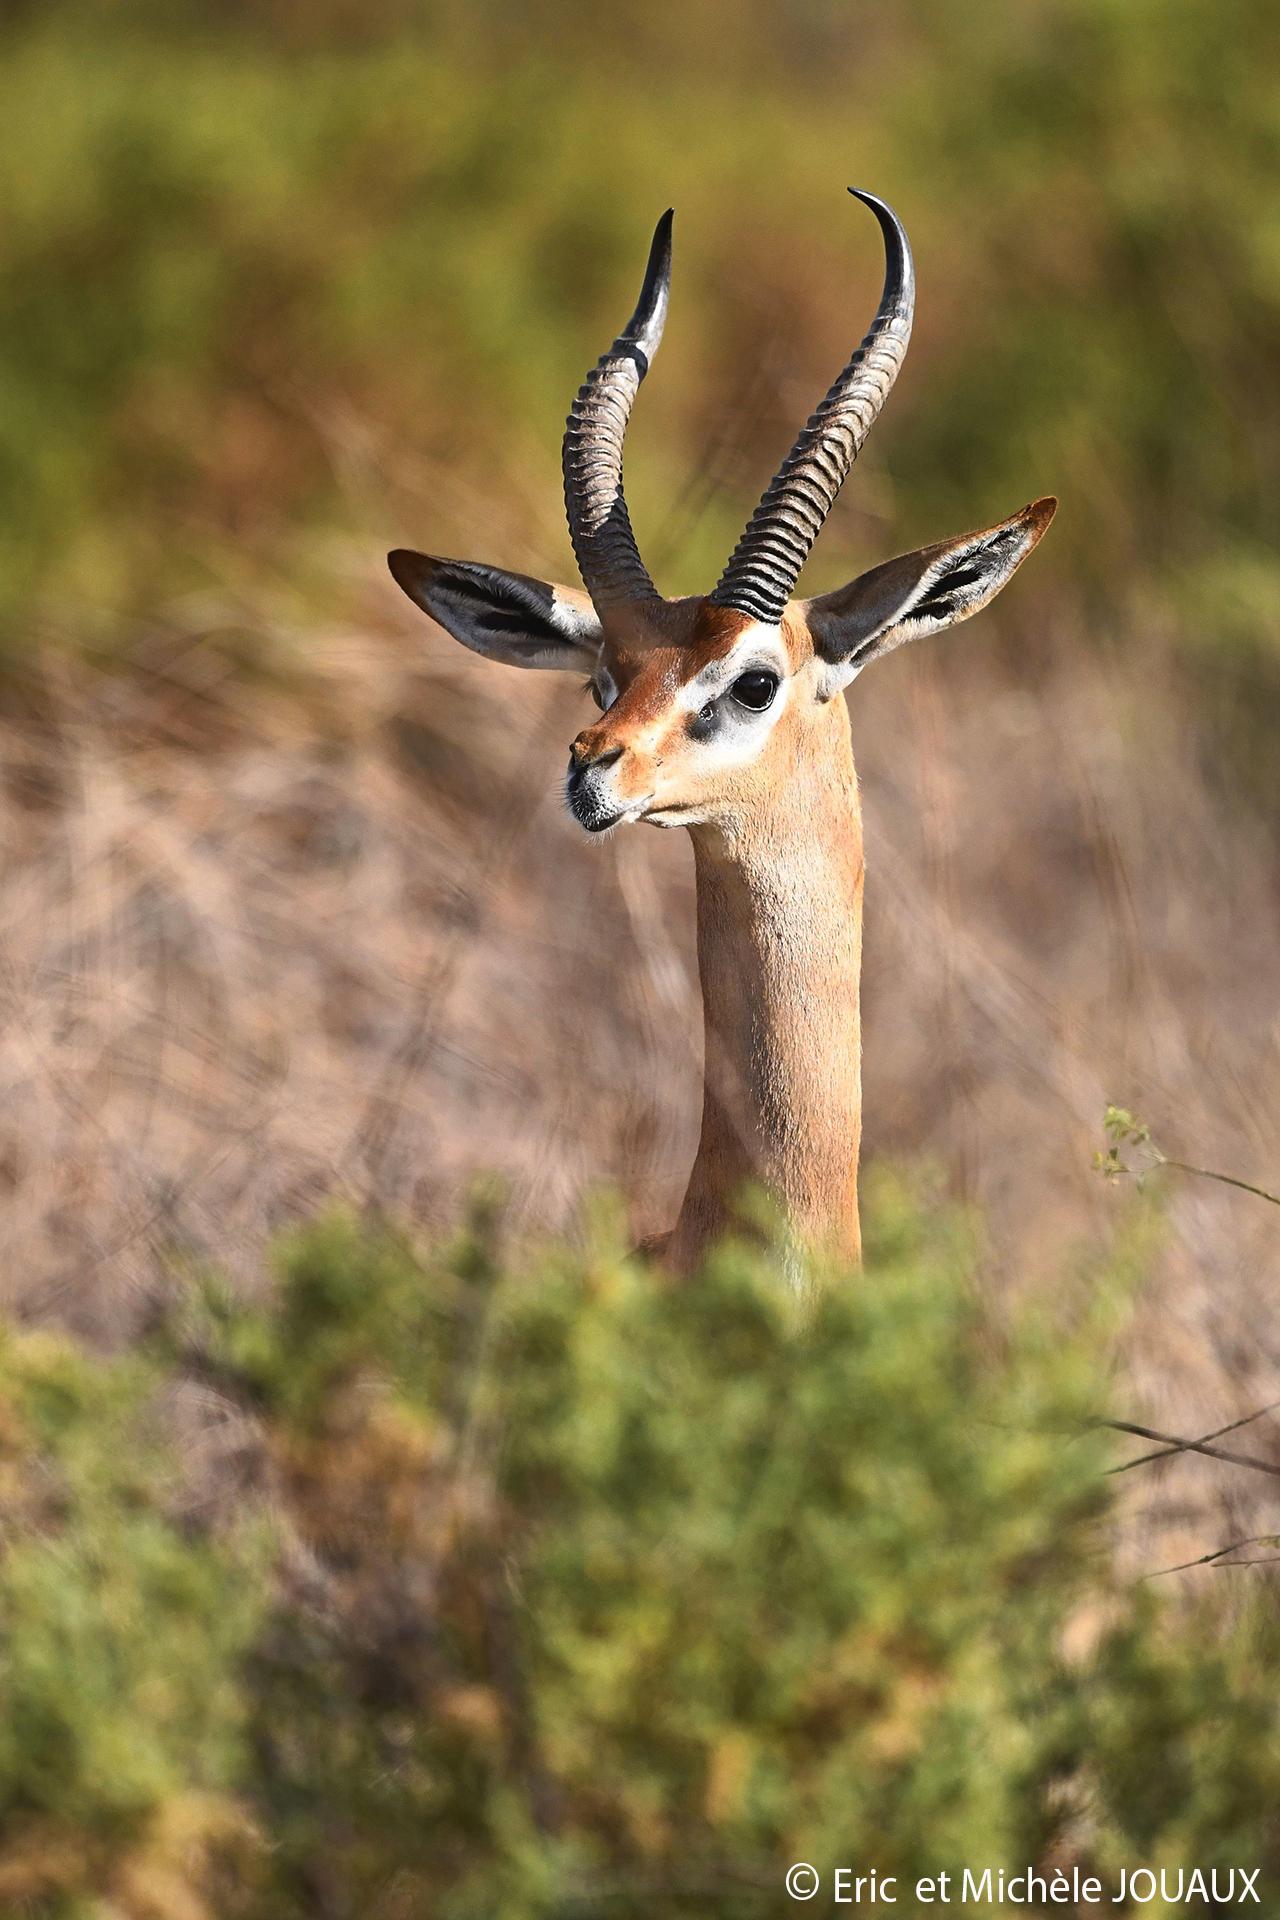 Samburu - gerenuk : une des espèces endémiques du nord Kenya